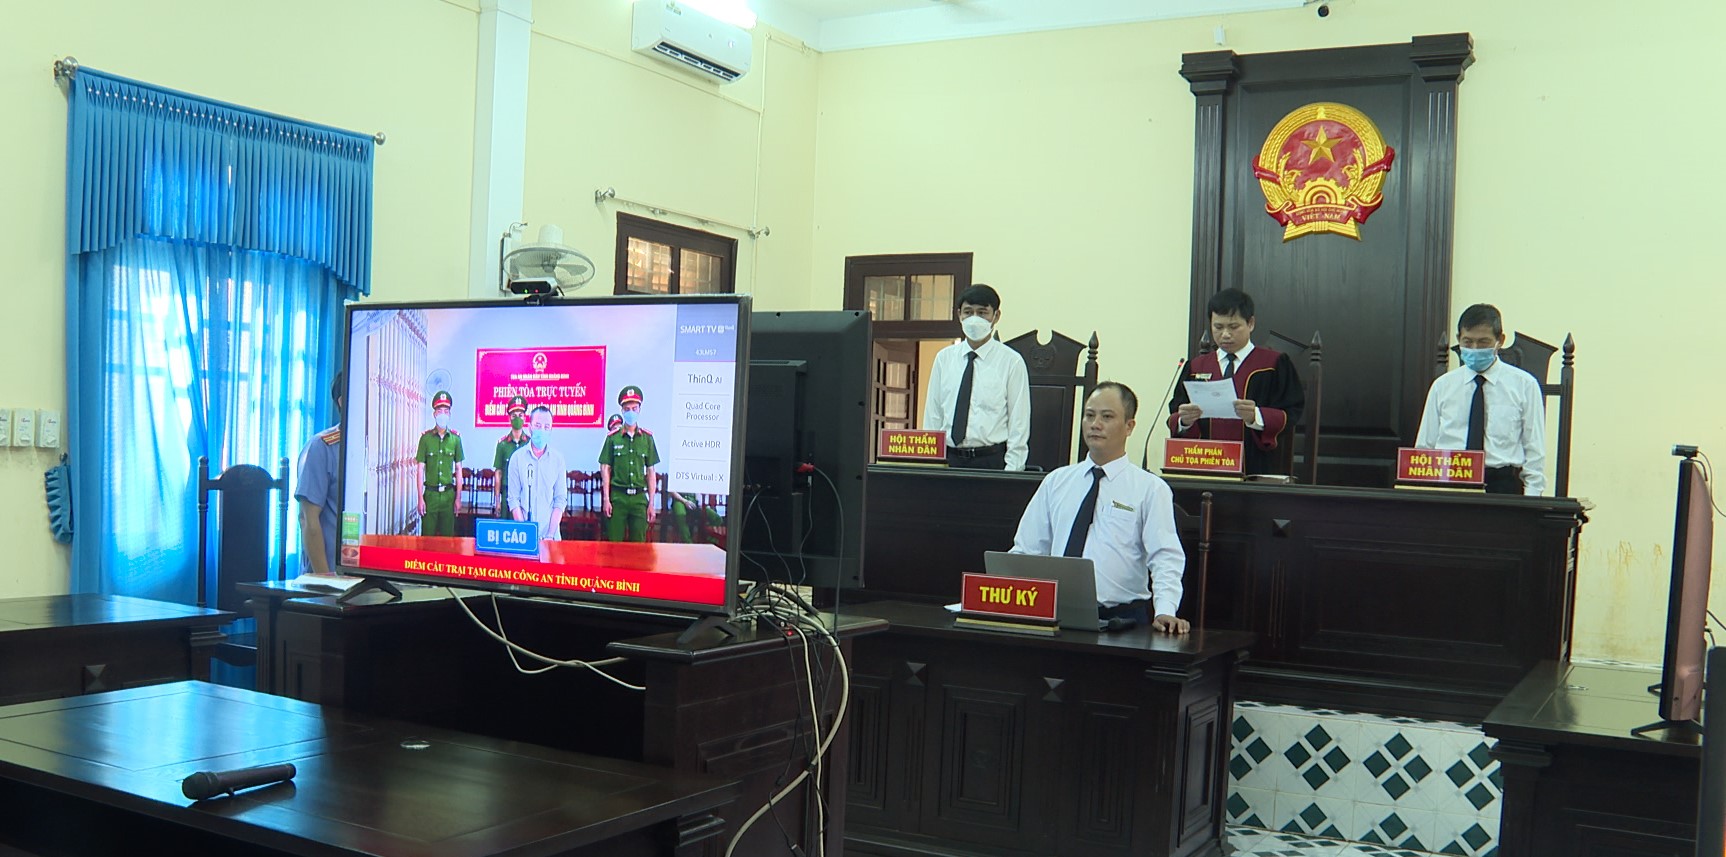 Quang cảnh phiên tòa trực tuyến xét xử đối tượng Phan Lê Huy.